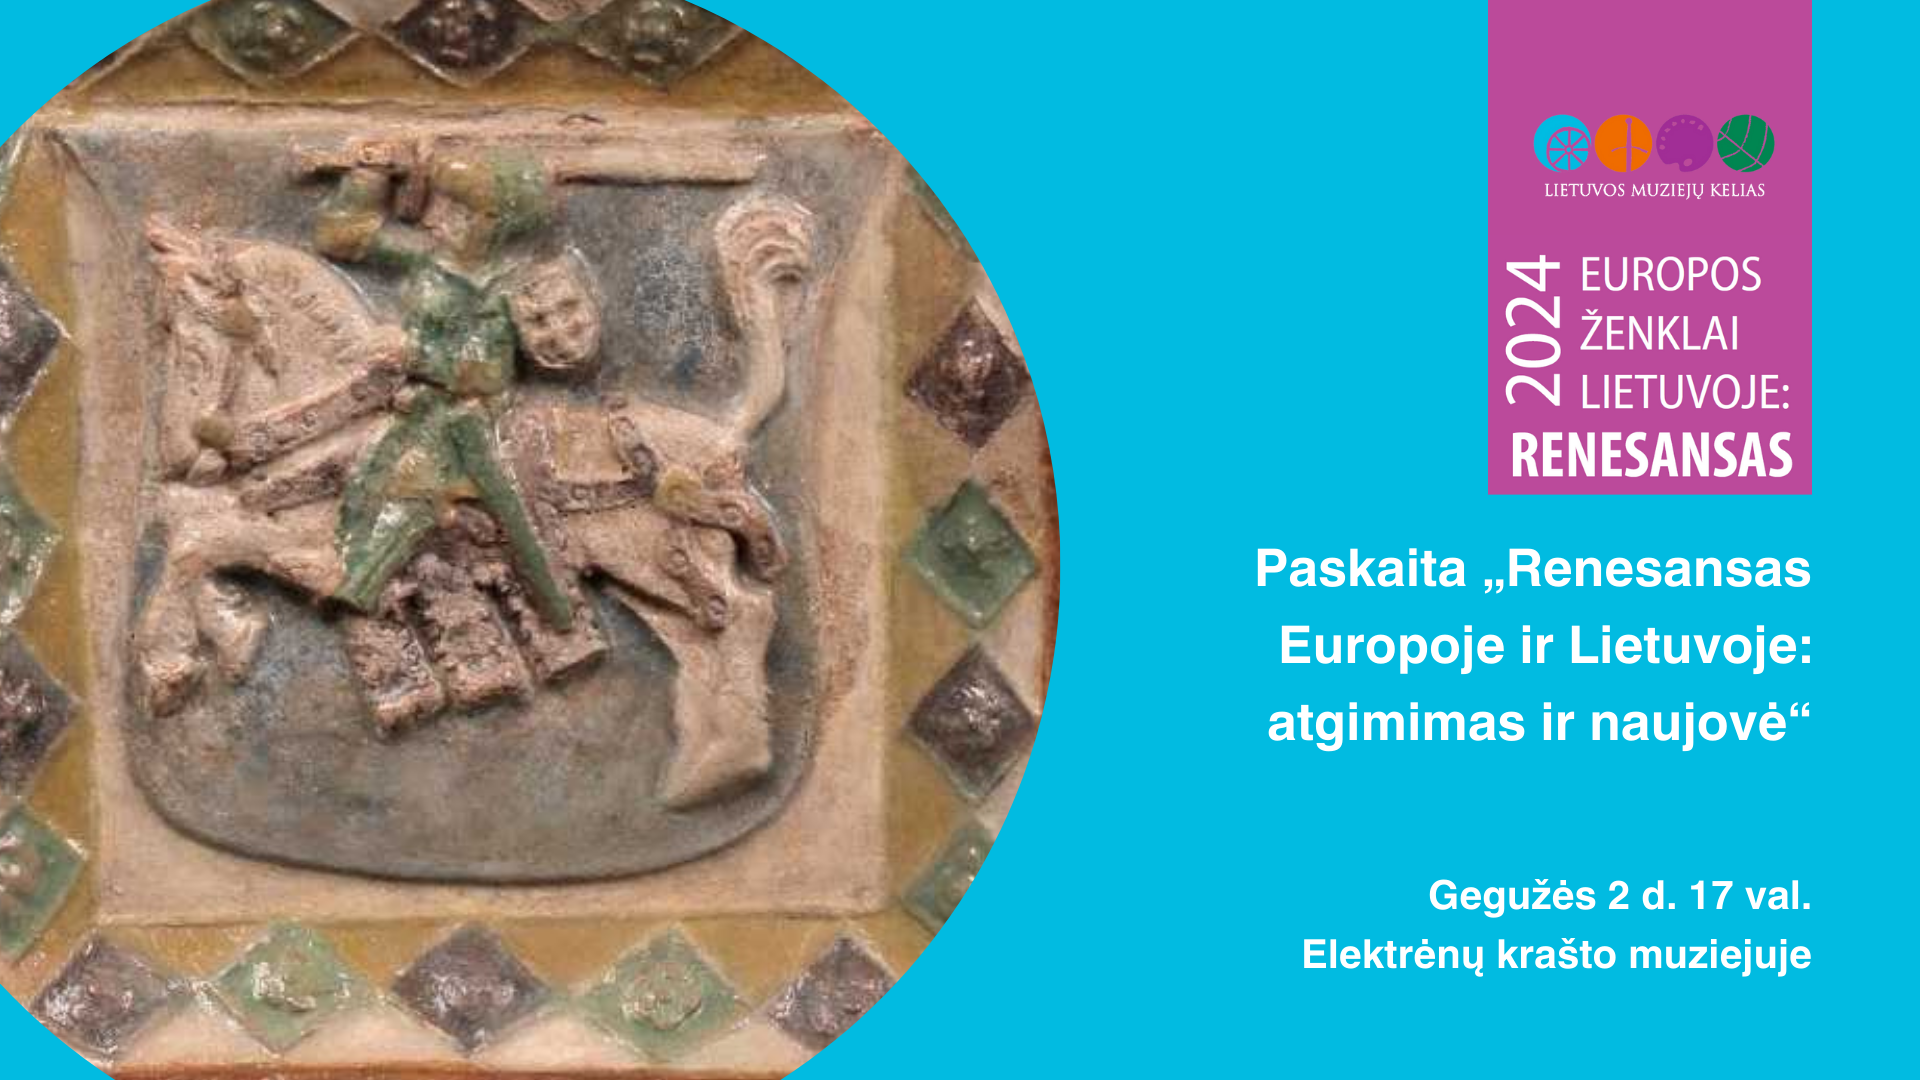 Lietuvos Muziejų Kelio 2024 programa „Europos ženklai Lietuvoje: Renesansas“